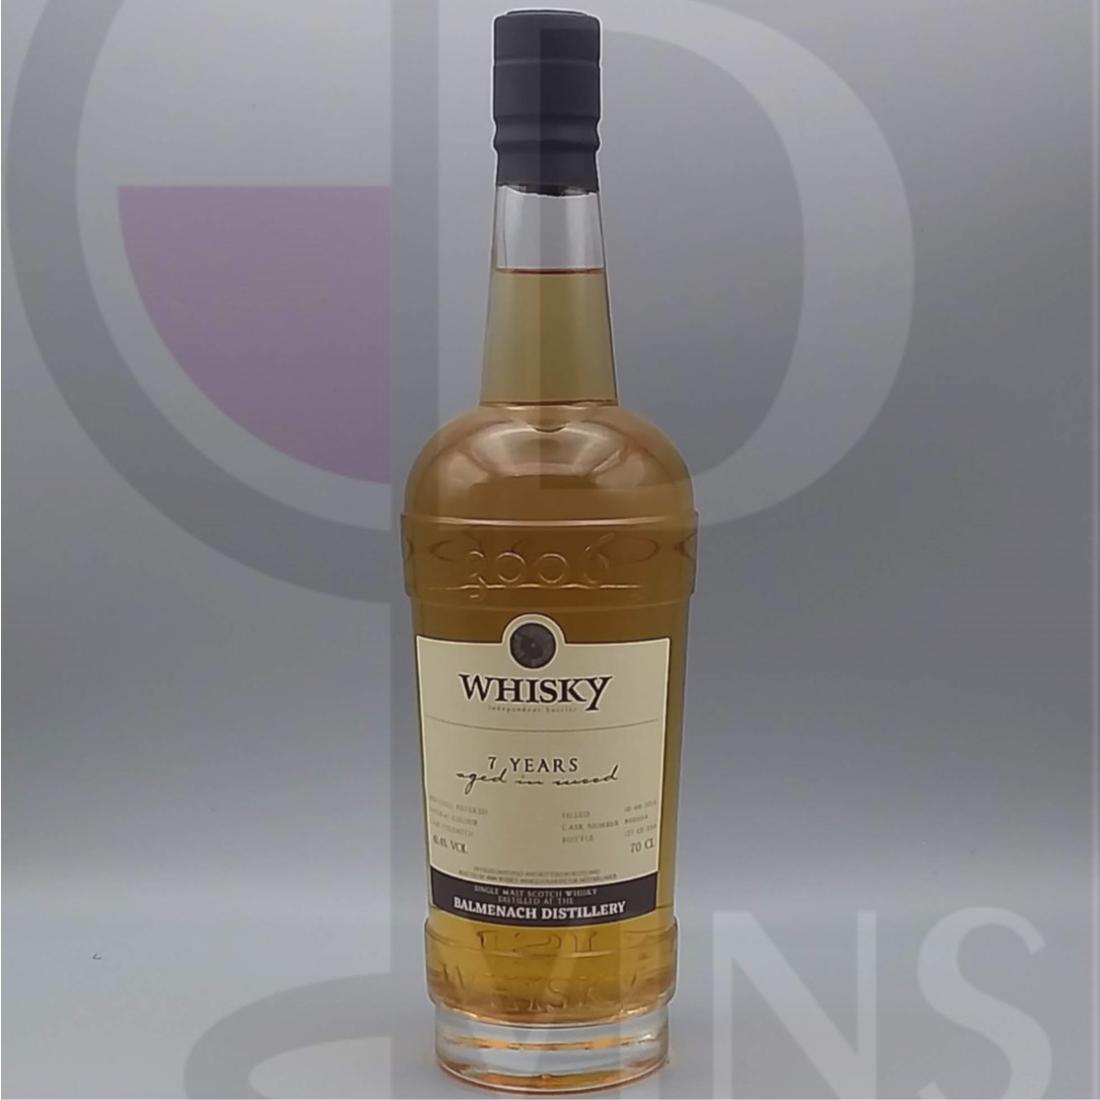 3006 Whisky Balmenach 7y 61,4% 70cl